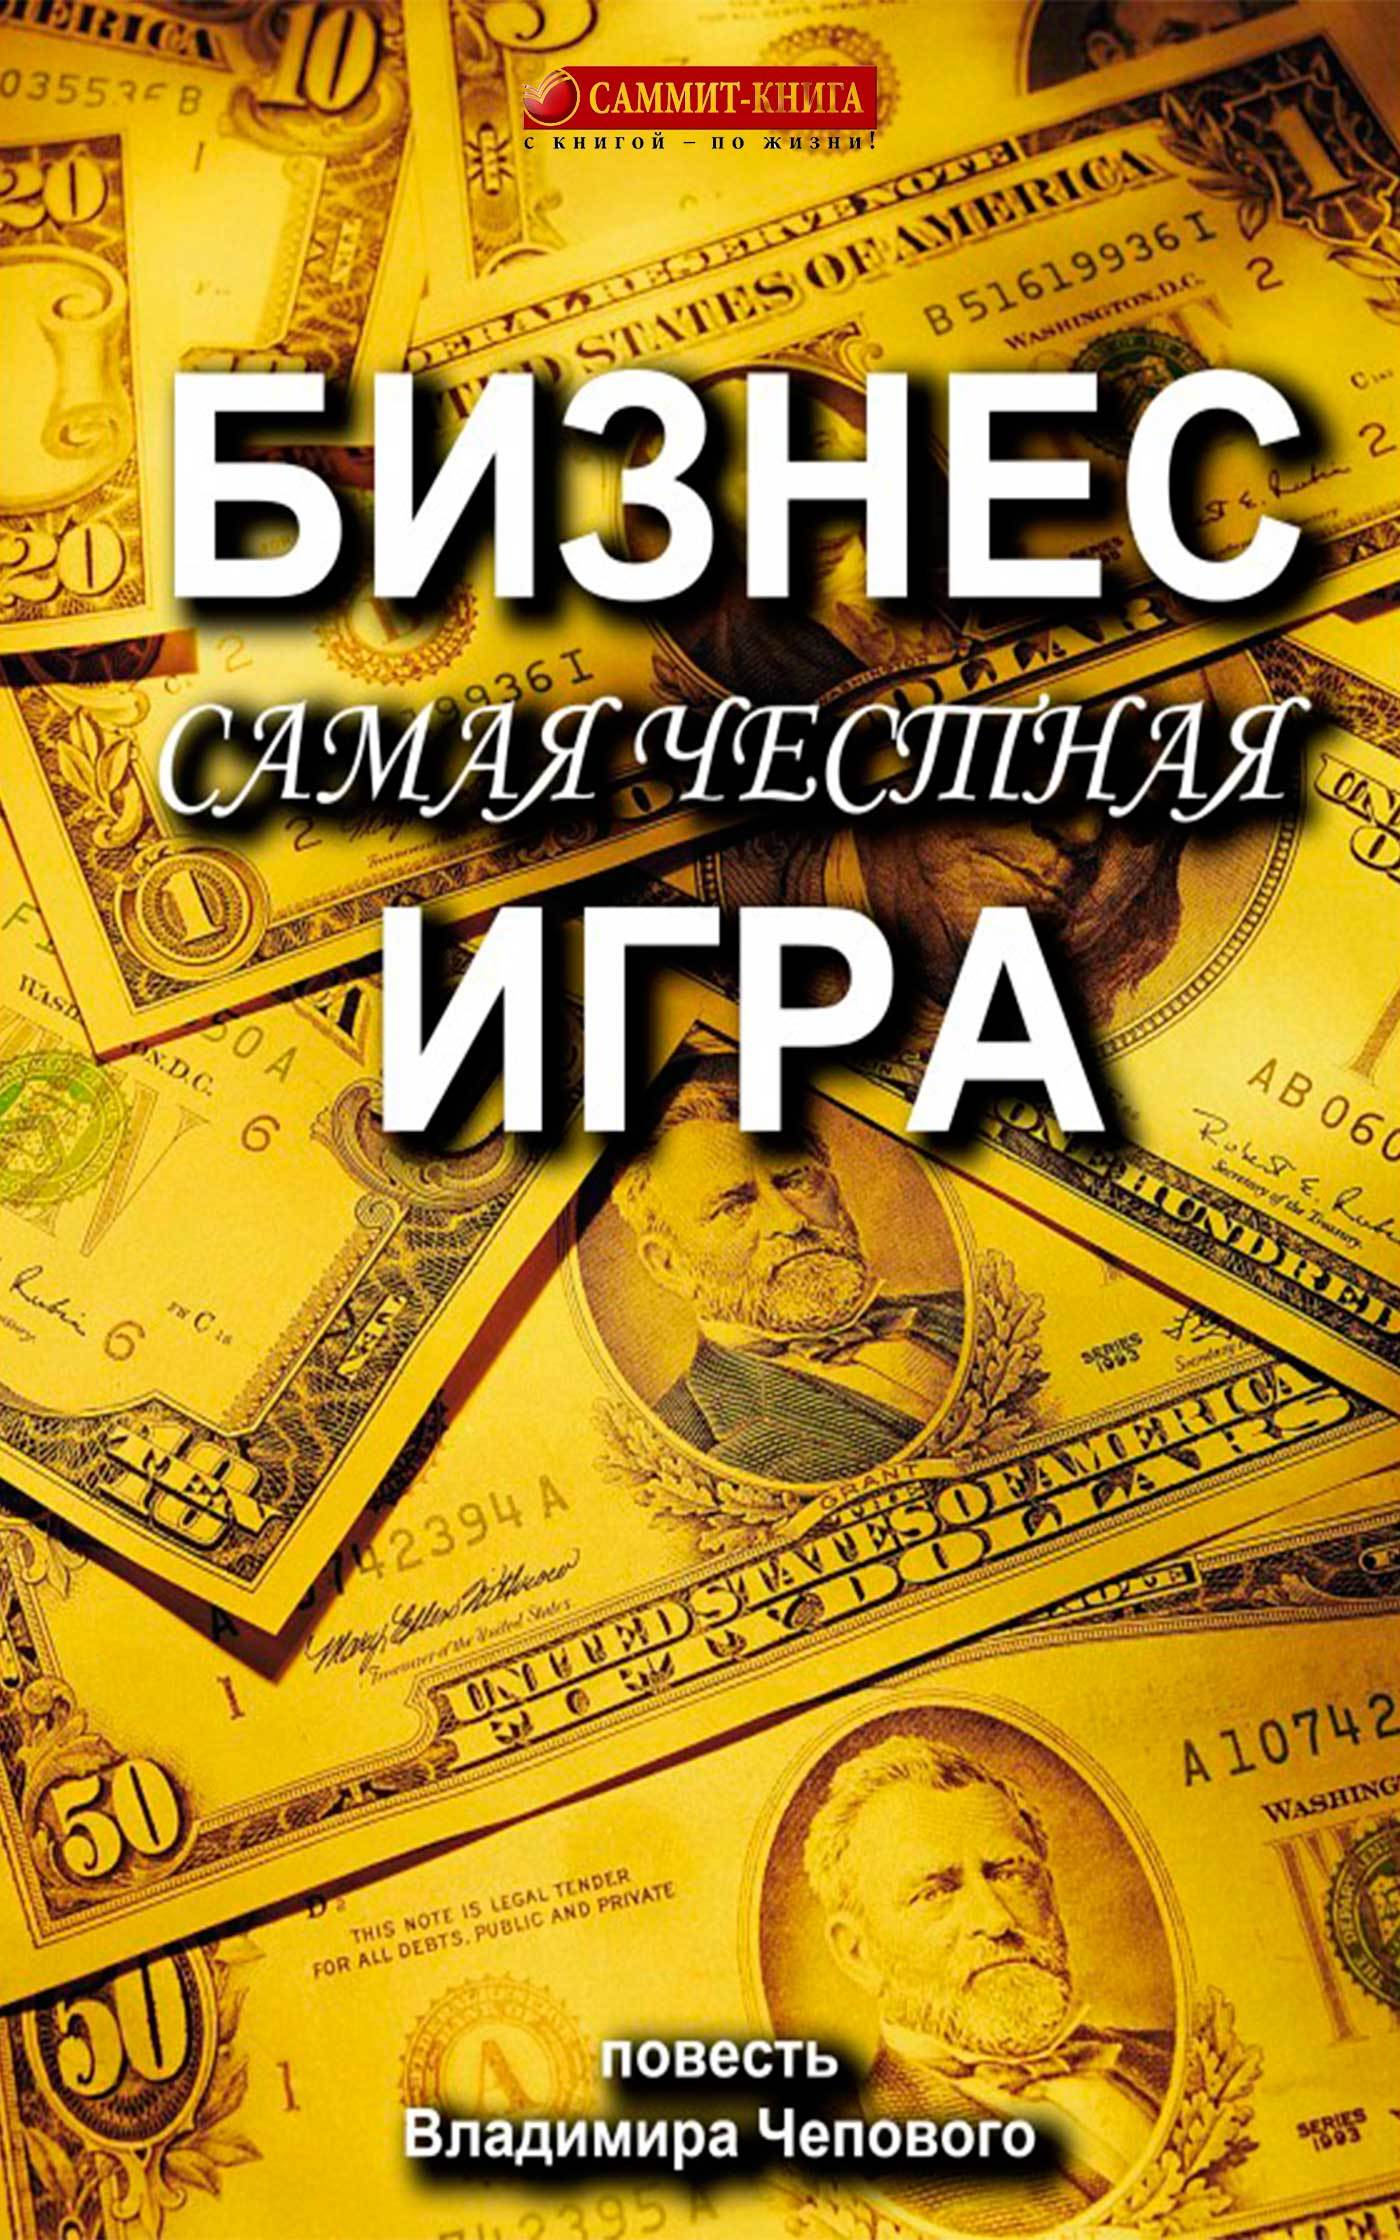 Книга  Бизнес – самая честная игра созданная Владимир Чеповой может относится к жанру истории успеха, книги о приключениях, просто о бизнесе. Стоимость электронной книги Бизнес – самая честная игра с идентификатором 24607309 составляет 129.00 руб.